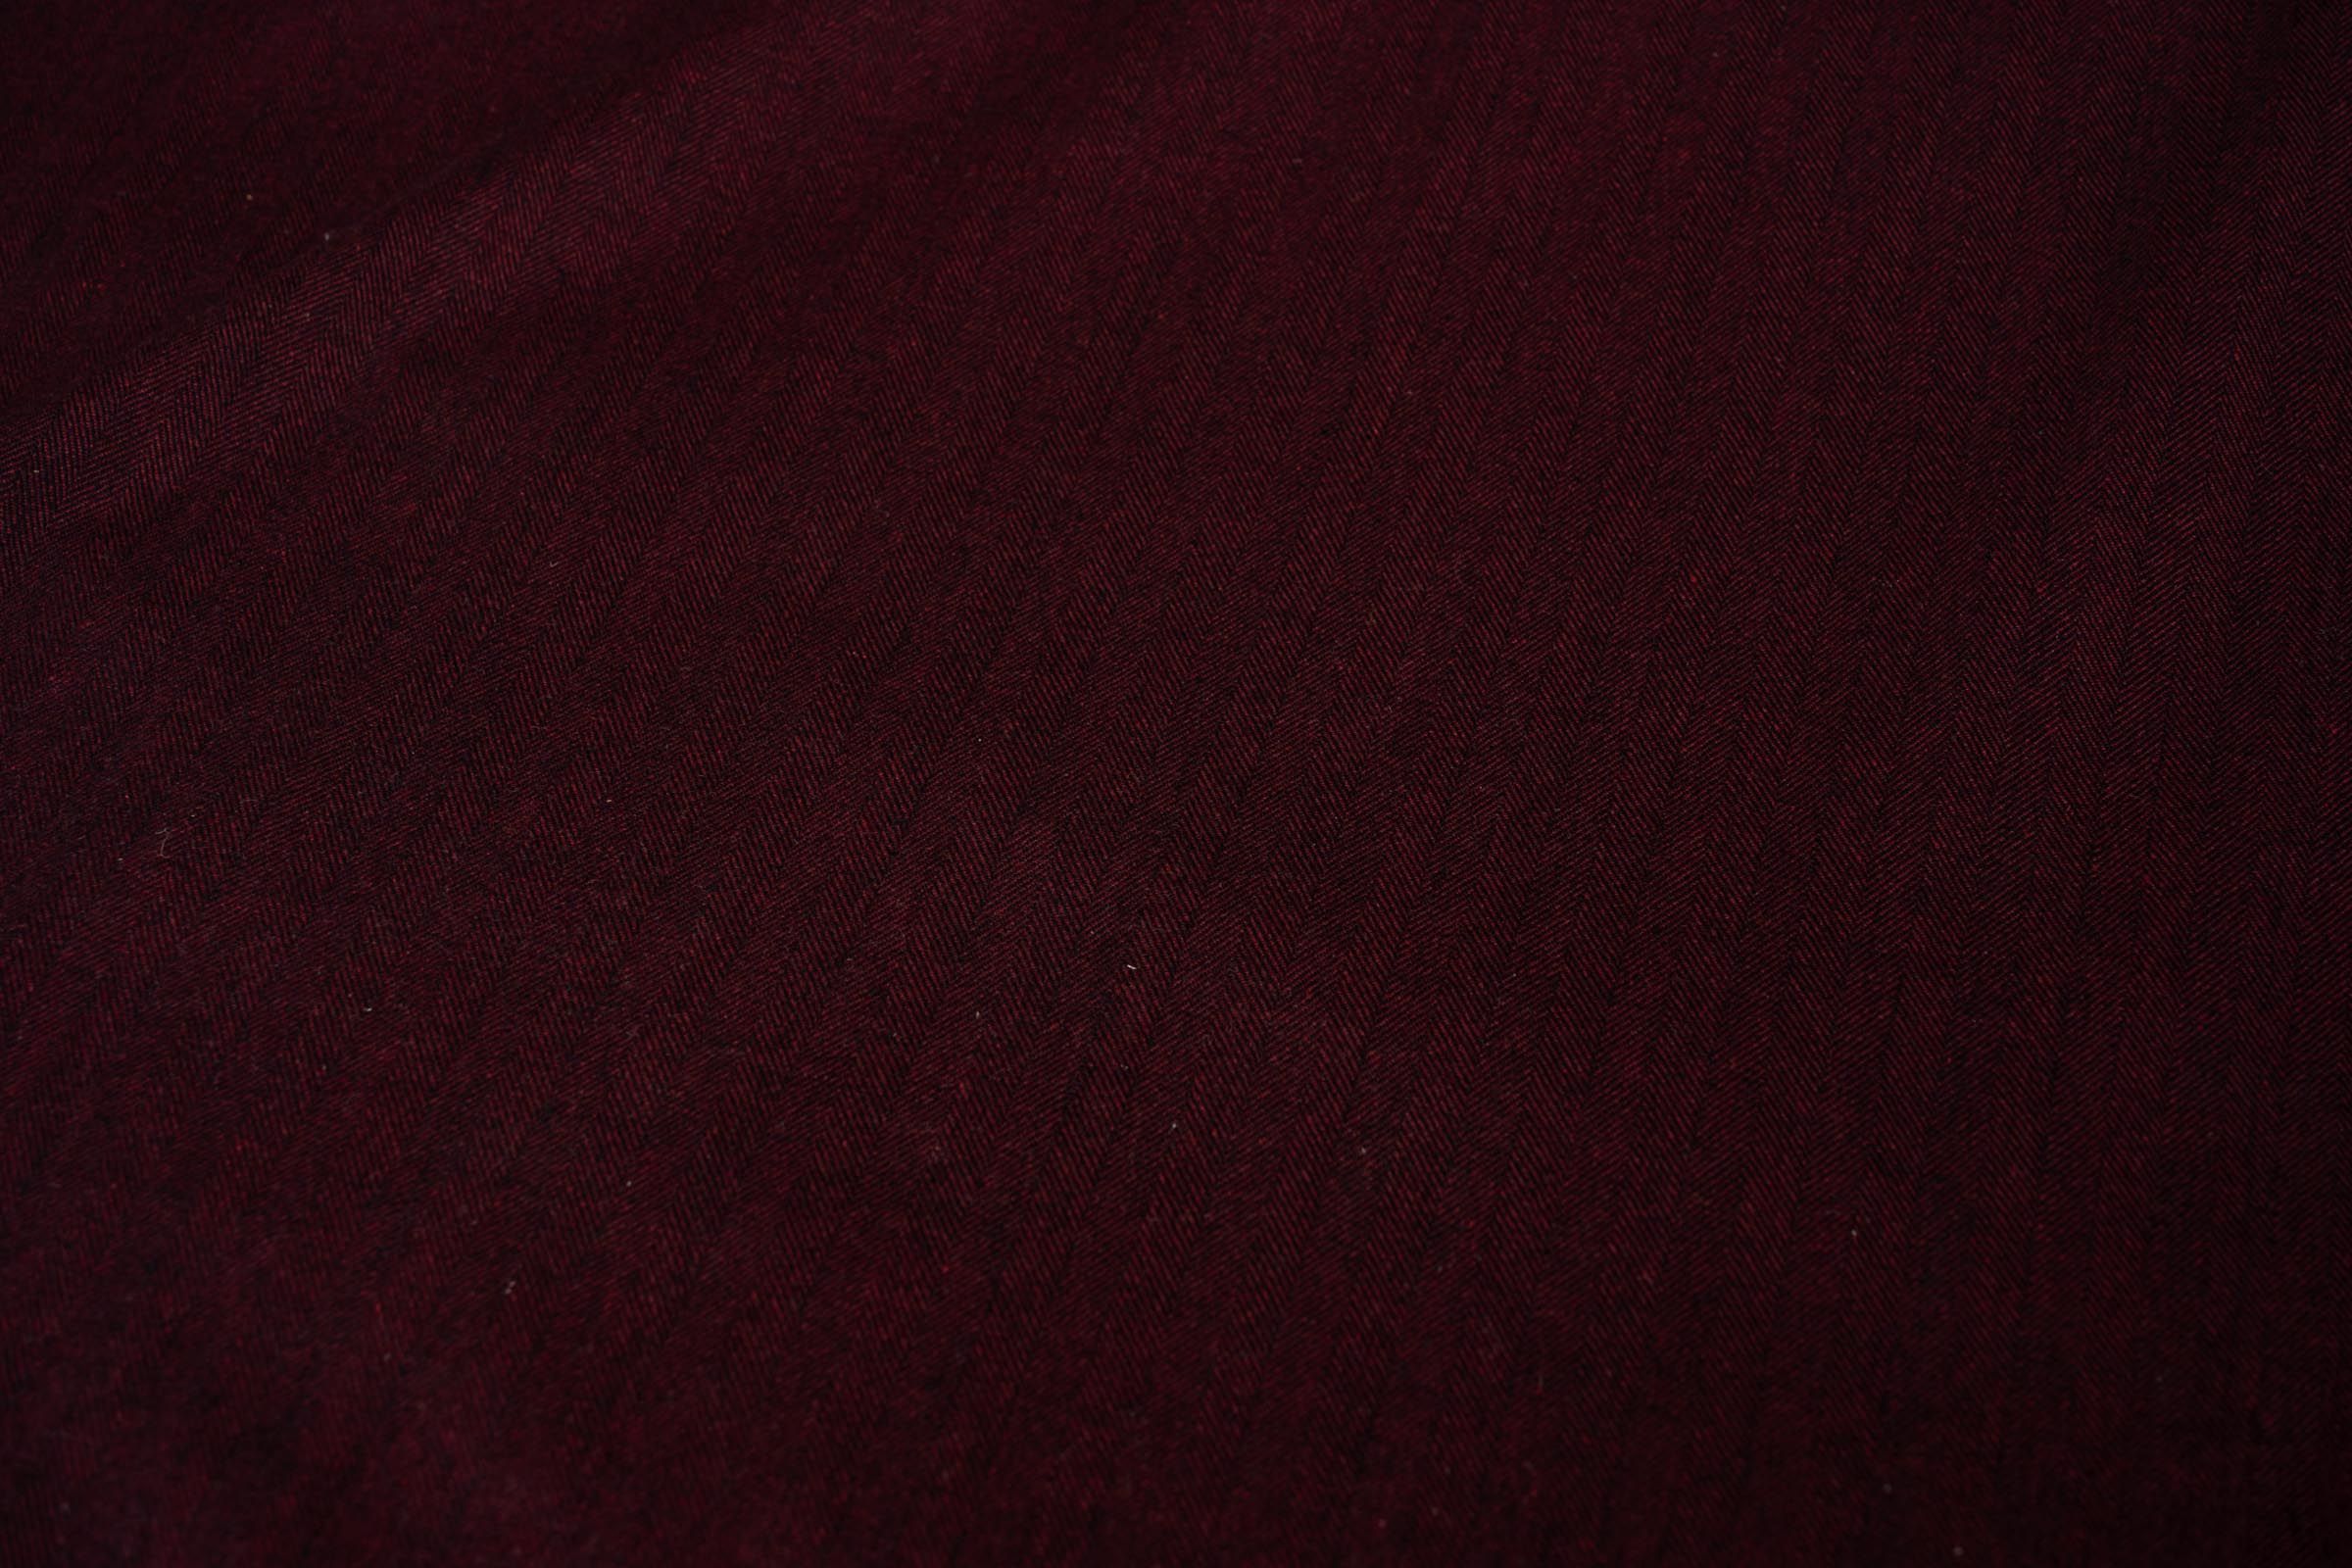 Wine Red Herring Bone Tweed Wool Fabric